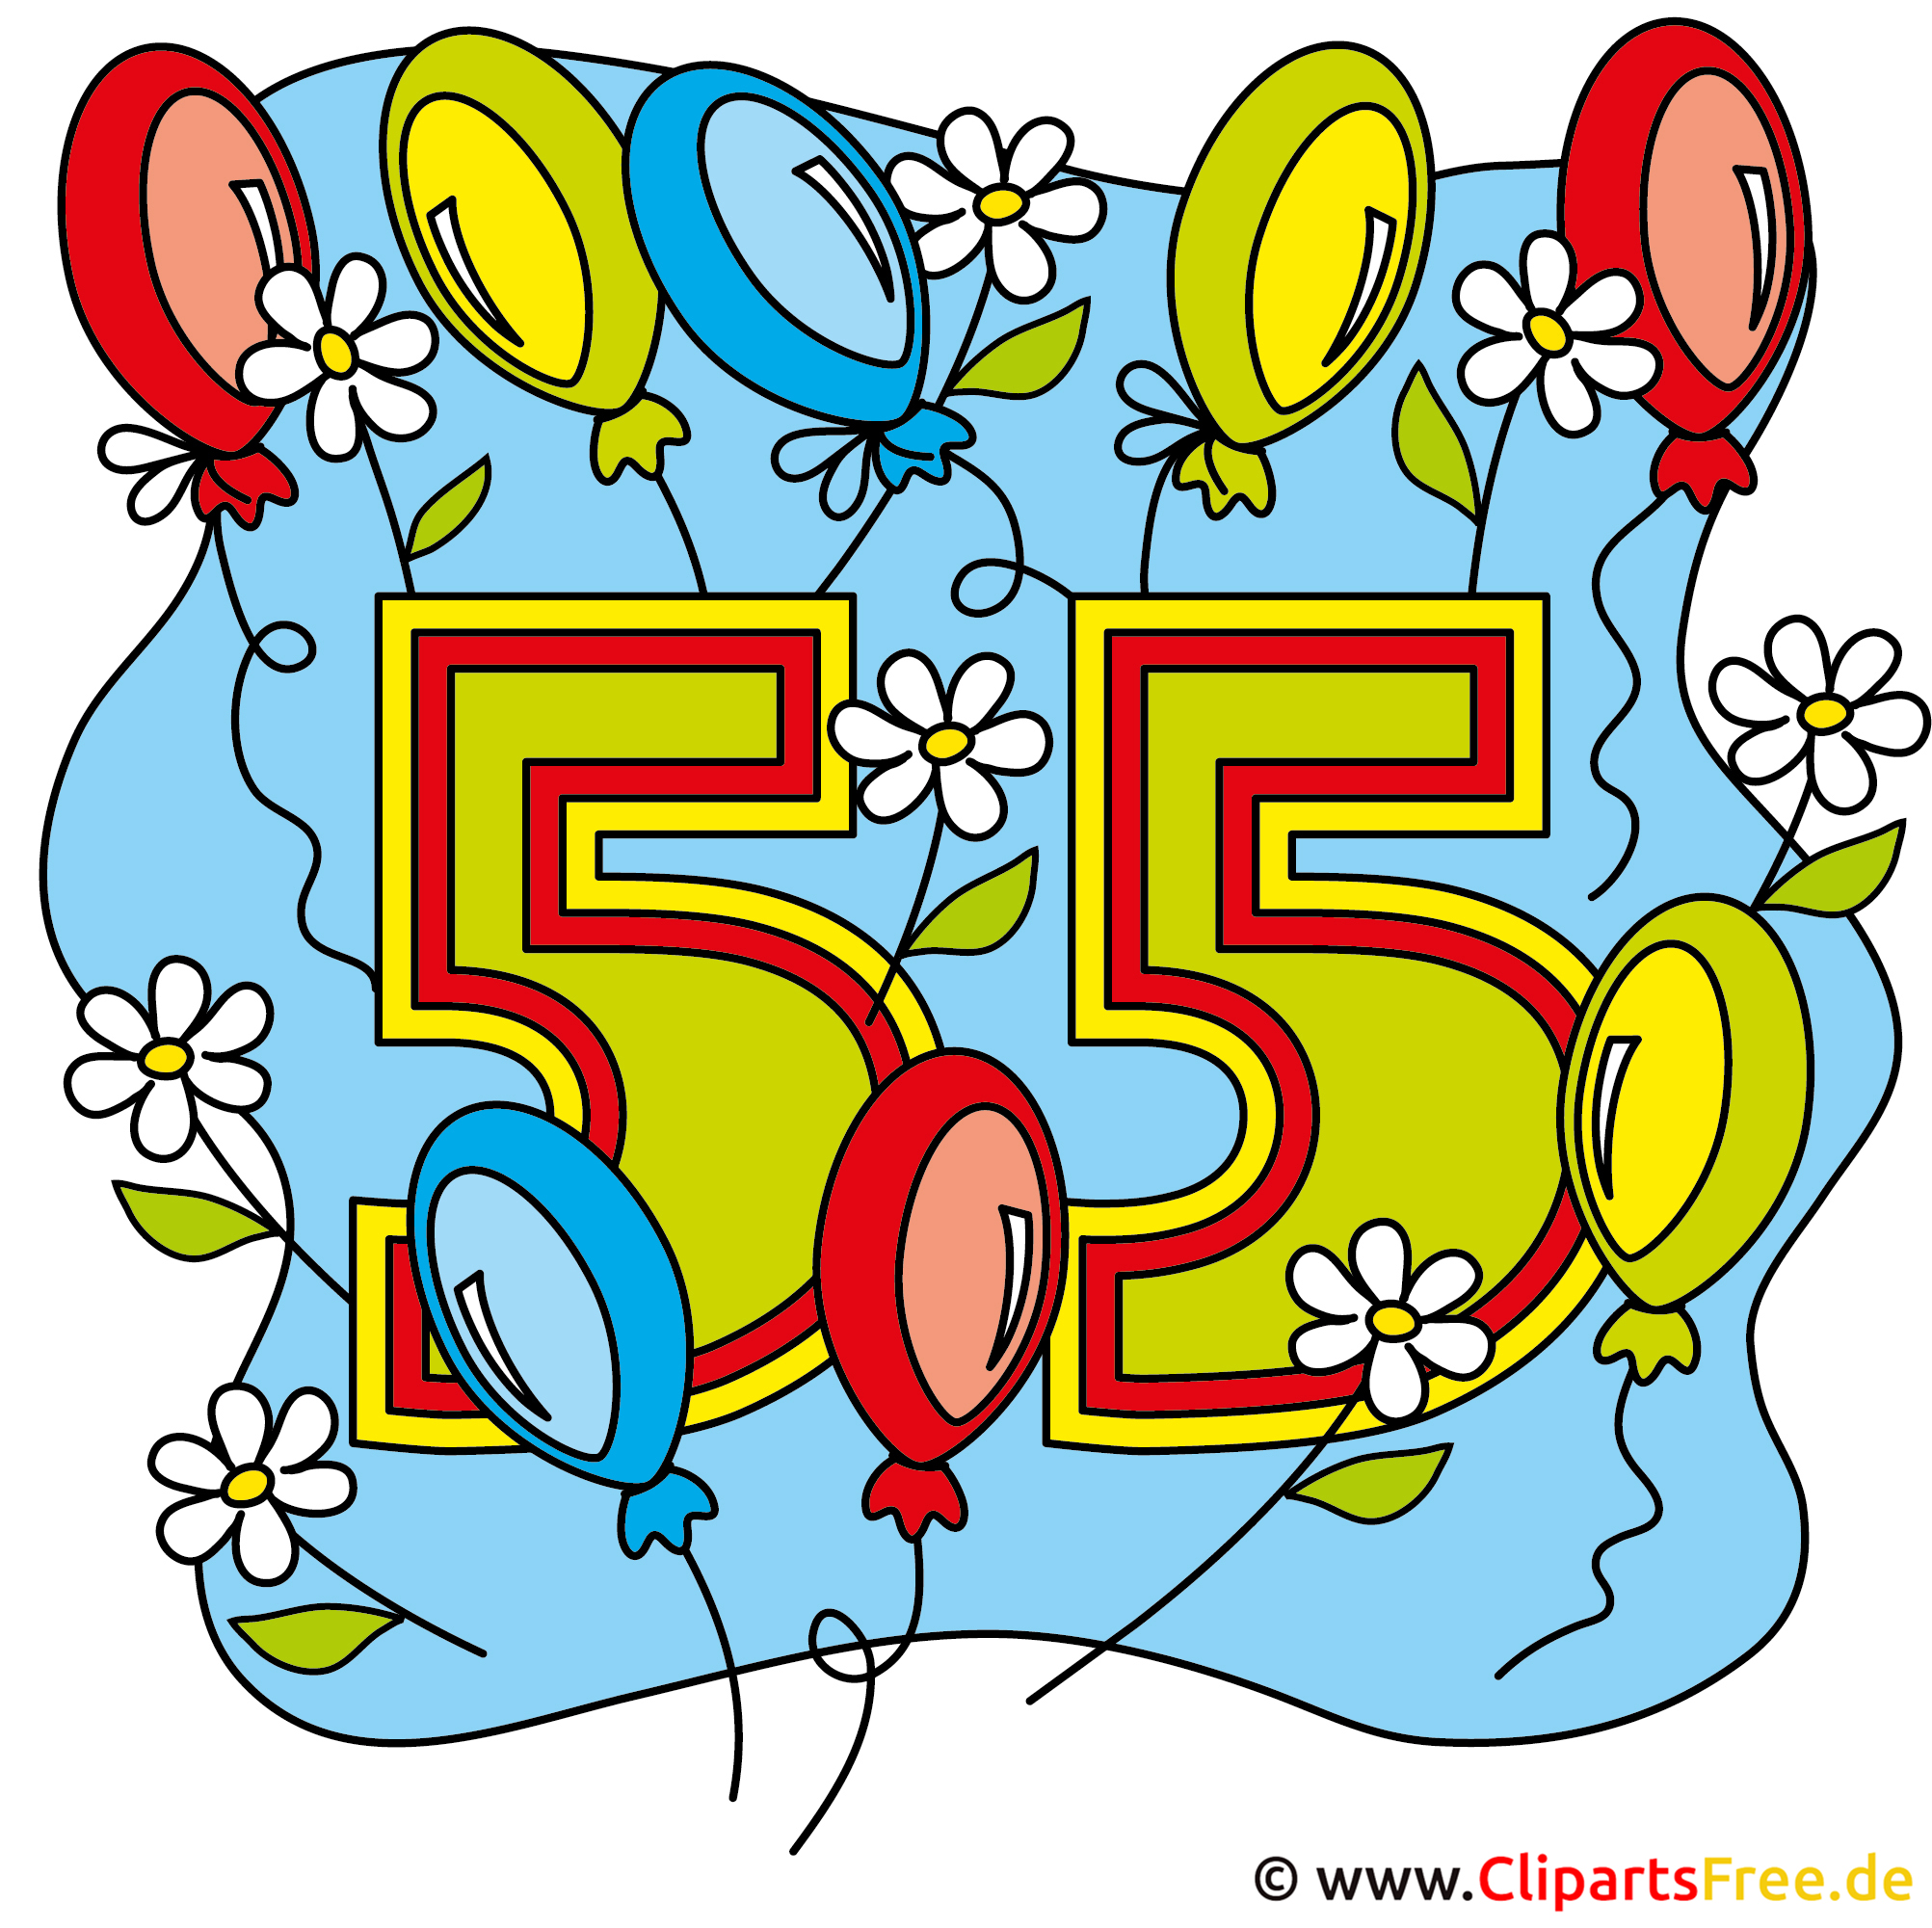 Geburtstag bilder kostenlos 55 Geburtstag Bilder